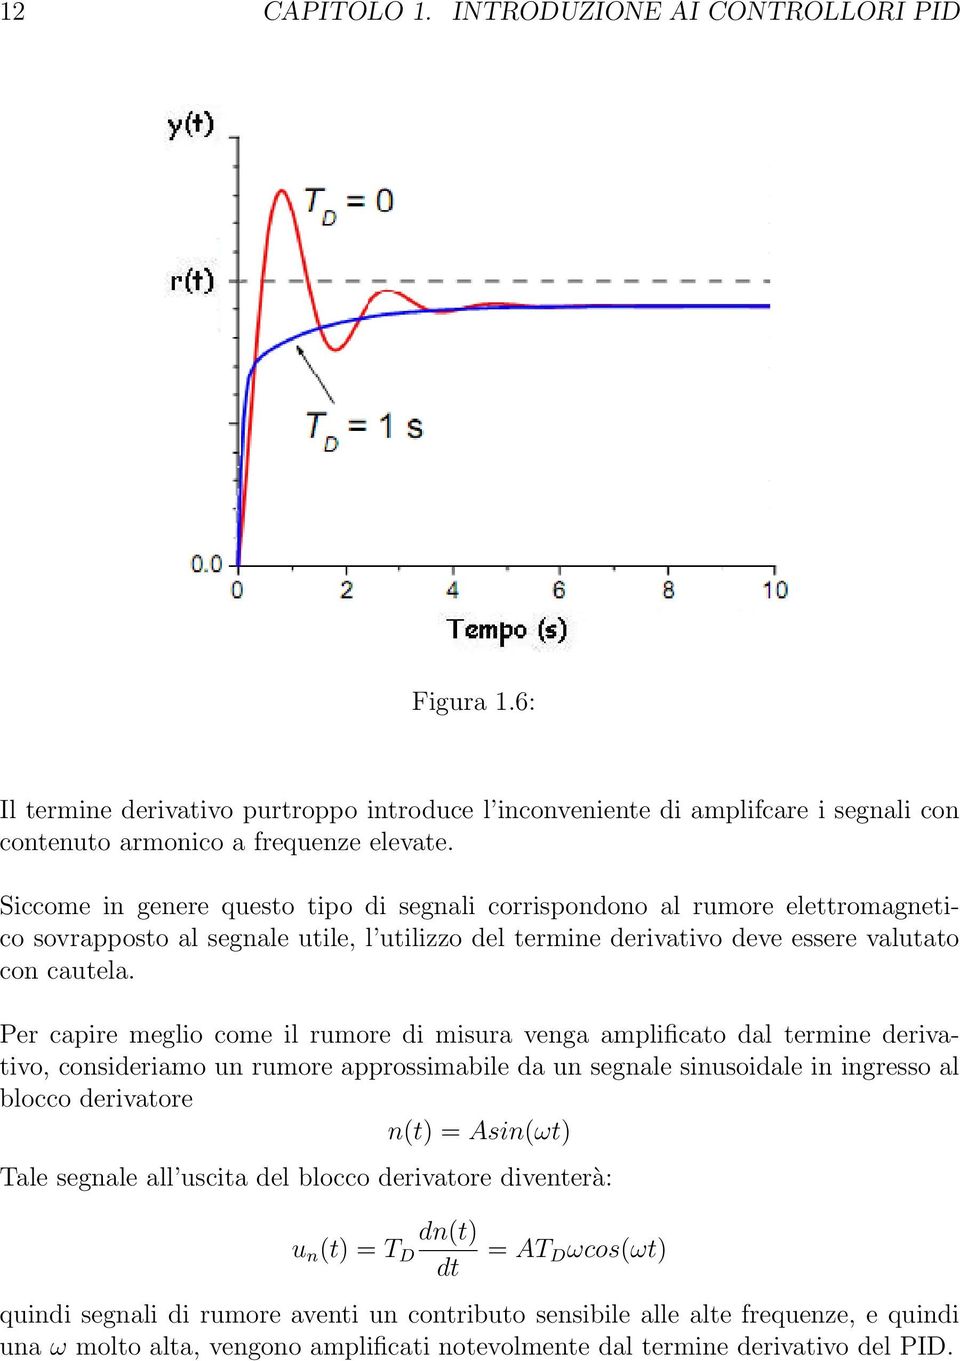 Per capire meglio come il rumore di misura venga amplificato dal termine derivativo, consideriamo un rumore approssimabile da un segnale sinusoidale in ingresso al blocco derivatore n(t) = Asin(ωt)